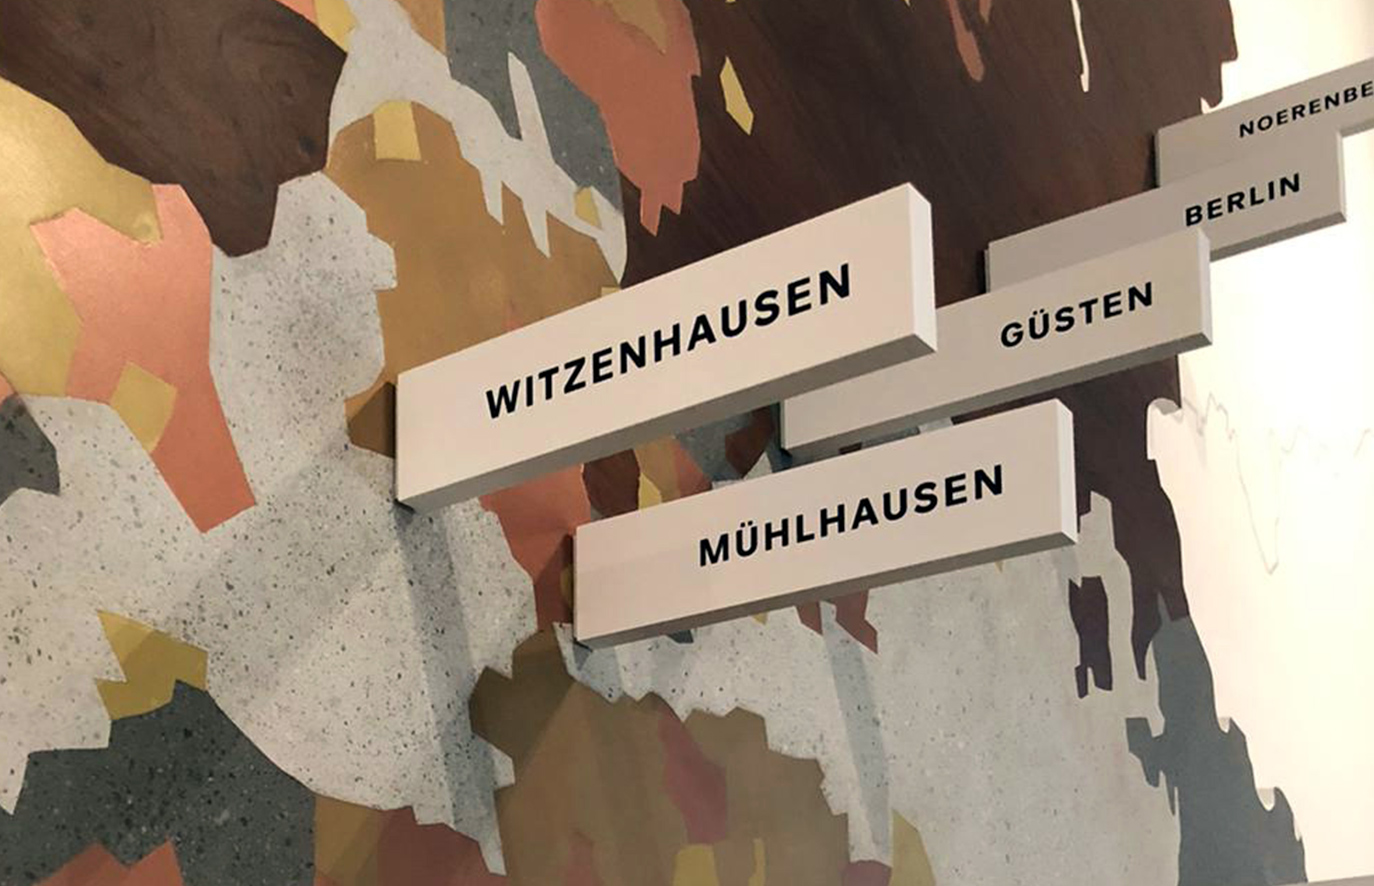 Juedisches Museum Berlin - eine Karte-Kunsthandwerk, Imitation, Sonderanfertigung - Graupalette